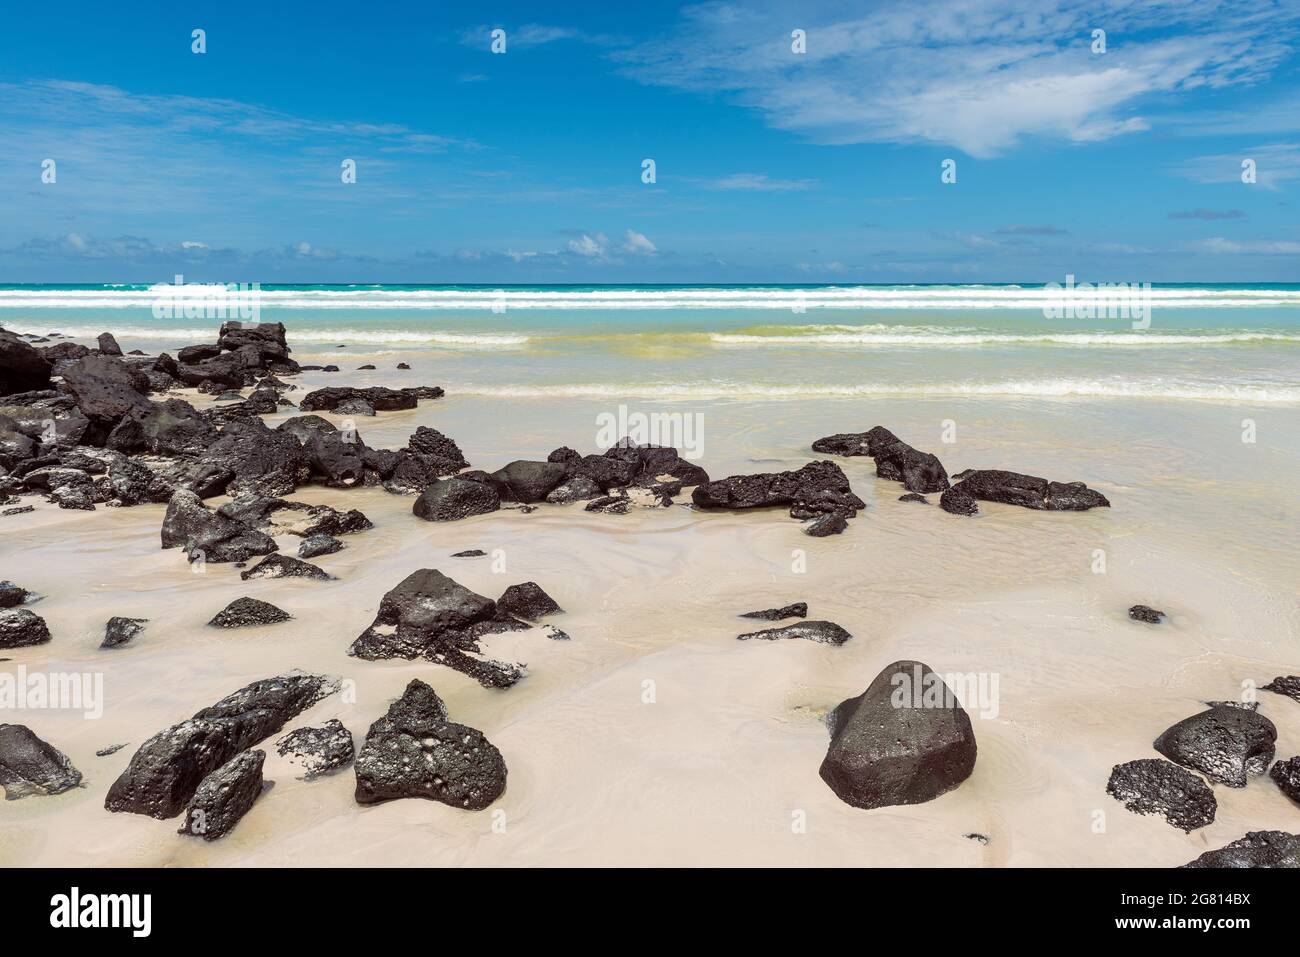 Plage de Tortuga avec roches volcaniques et turquoise de l'océan Pacifique, île de Santa Cruz, parc national de Galapagos, Equateur. Banque D'Images